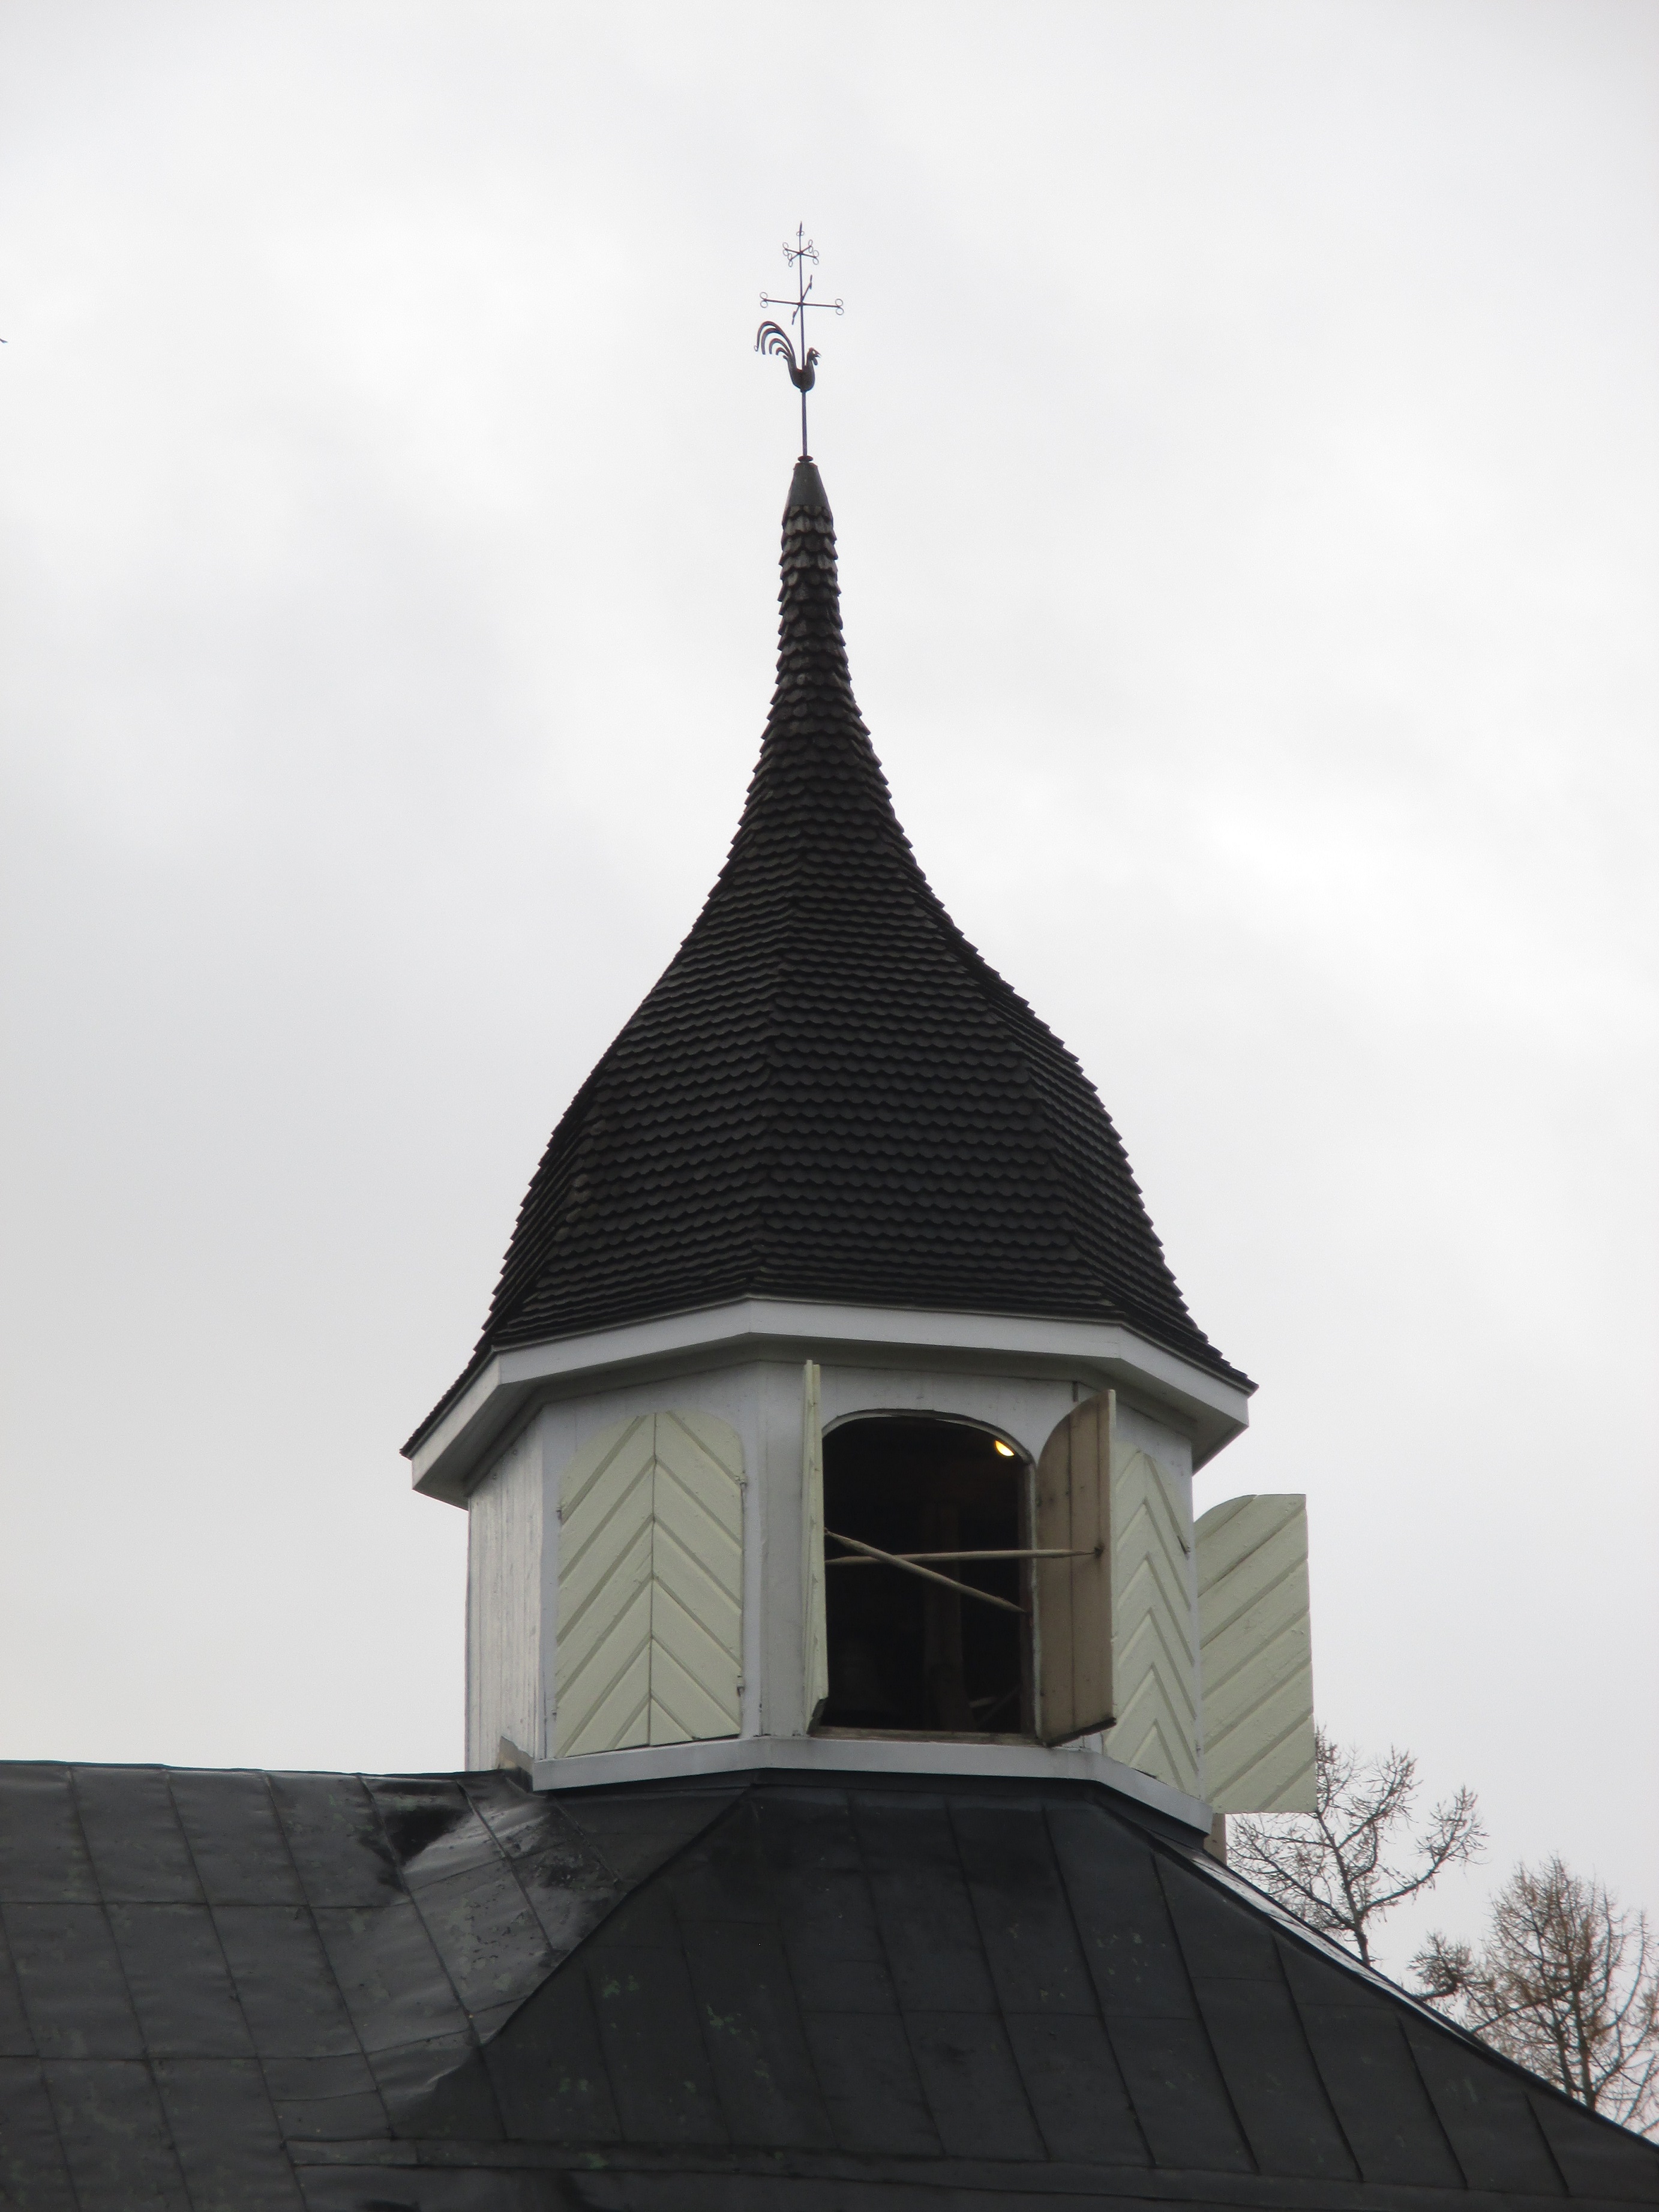 puurakenteisen kirkon kellotorni, jonka luukkuja on avattu